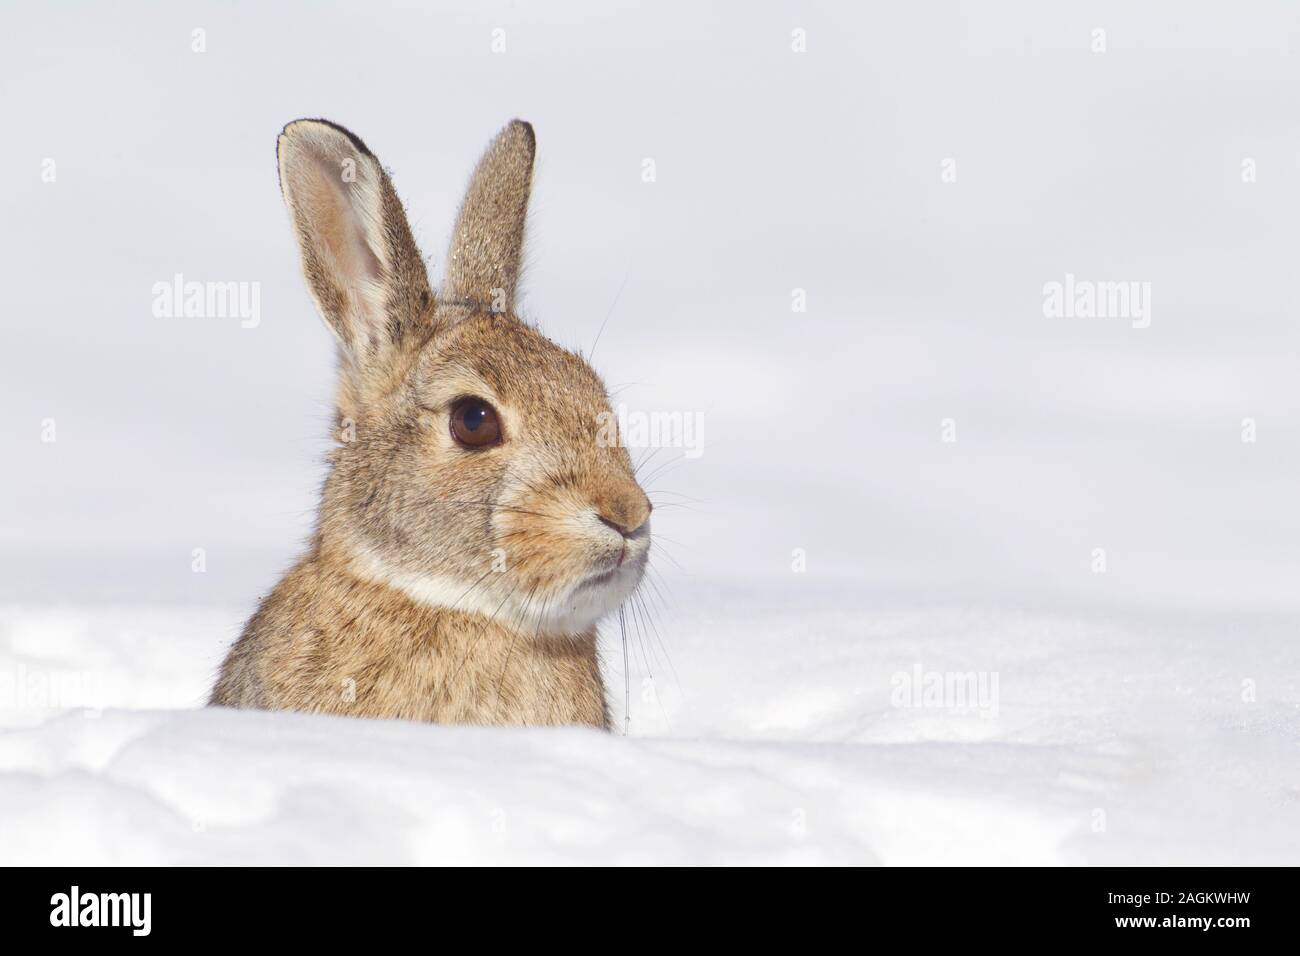 Un selvaggio di coniglio silvilago emerge da una pesante nevicata fresca Foto Stock